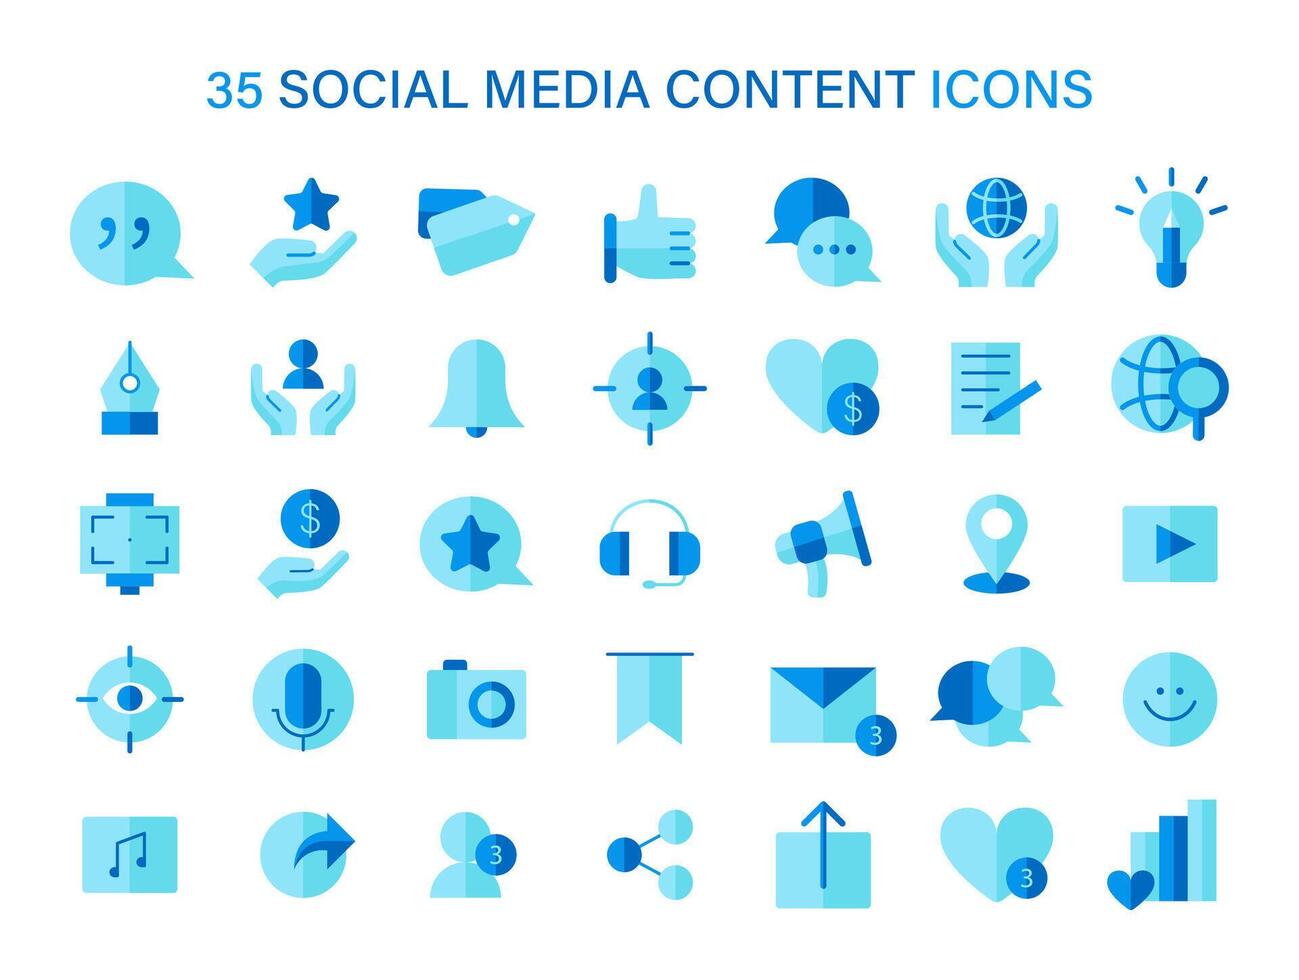 social medios de comunicación contenido íconos colocar. formación de digital compromiso y red Interacción iconos vector